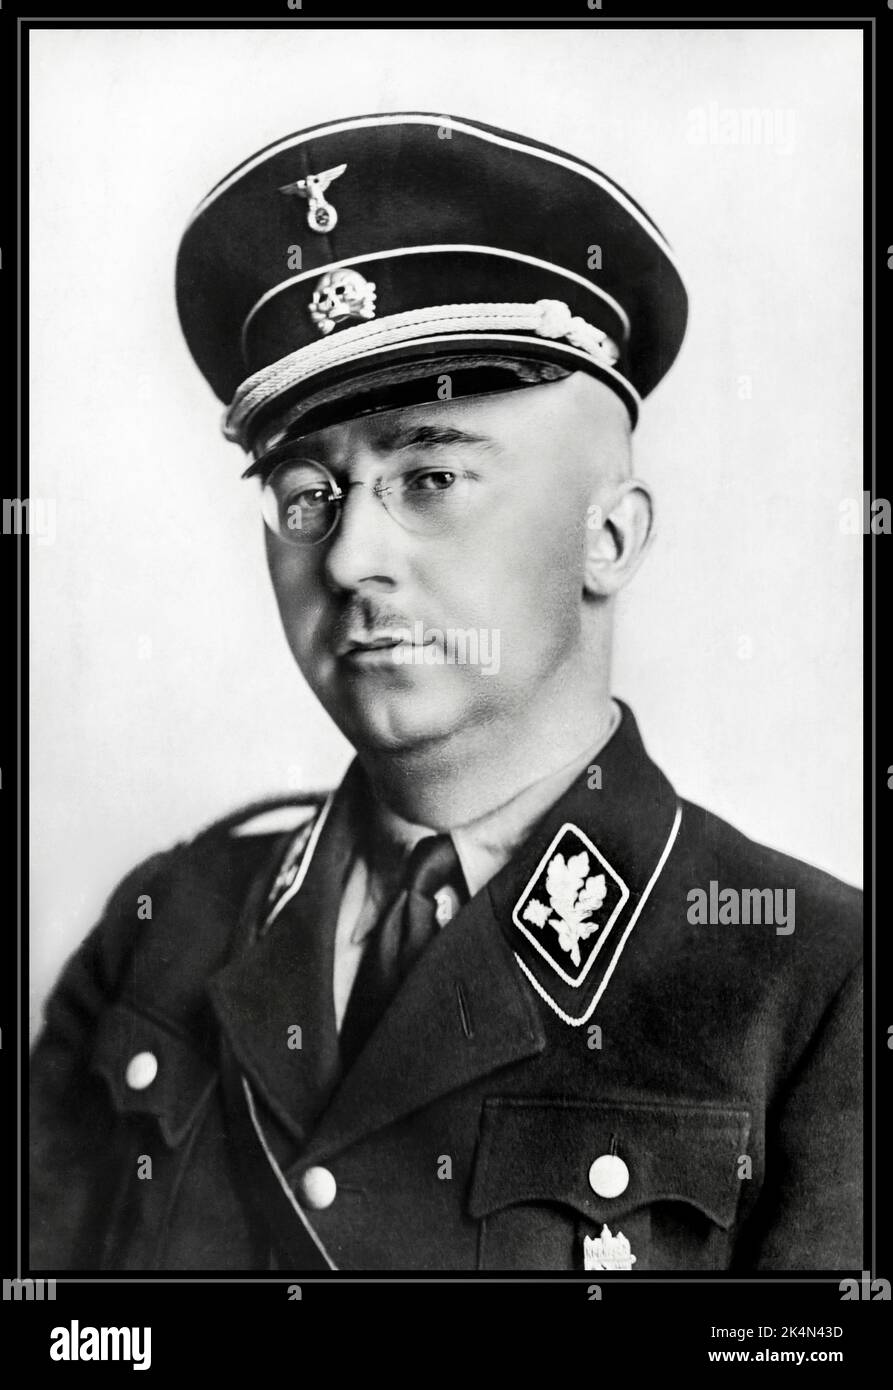 Portrait officiel HIMMLER en uniforme SS. 1938 Heinrich Luitpold Himmler était Reichsführer du Schutzstaffel, et un membre important du Parti nazi d'Allemagne. Himmler était l'un des hommes les plus puissants de l'Allemagne nazie et l'un des principaux architectes de l'Holocauste.WW2 Heinrich politicien national-socialiste allemand commandant militaire nazi police secrète. A facilité le génocide en Europe et à l'est. Suicide commis en 1945 Banque D'Images